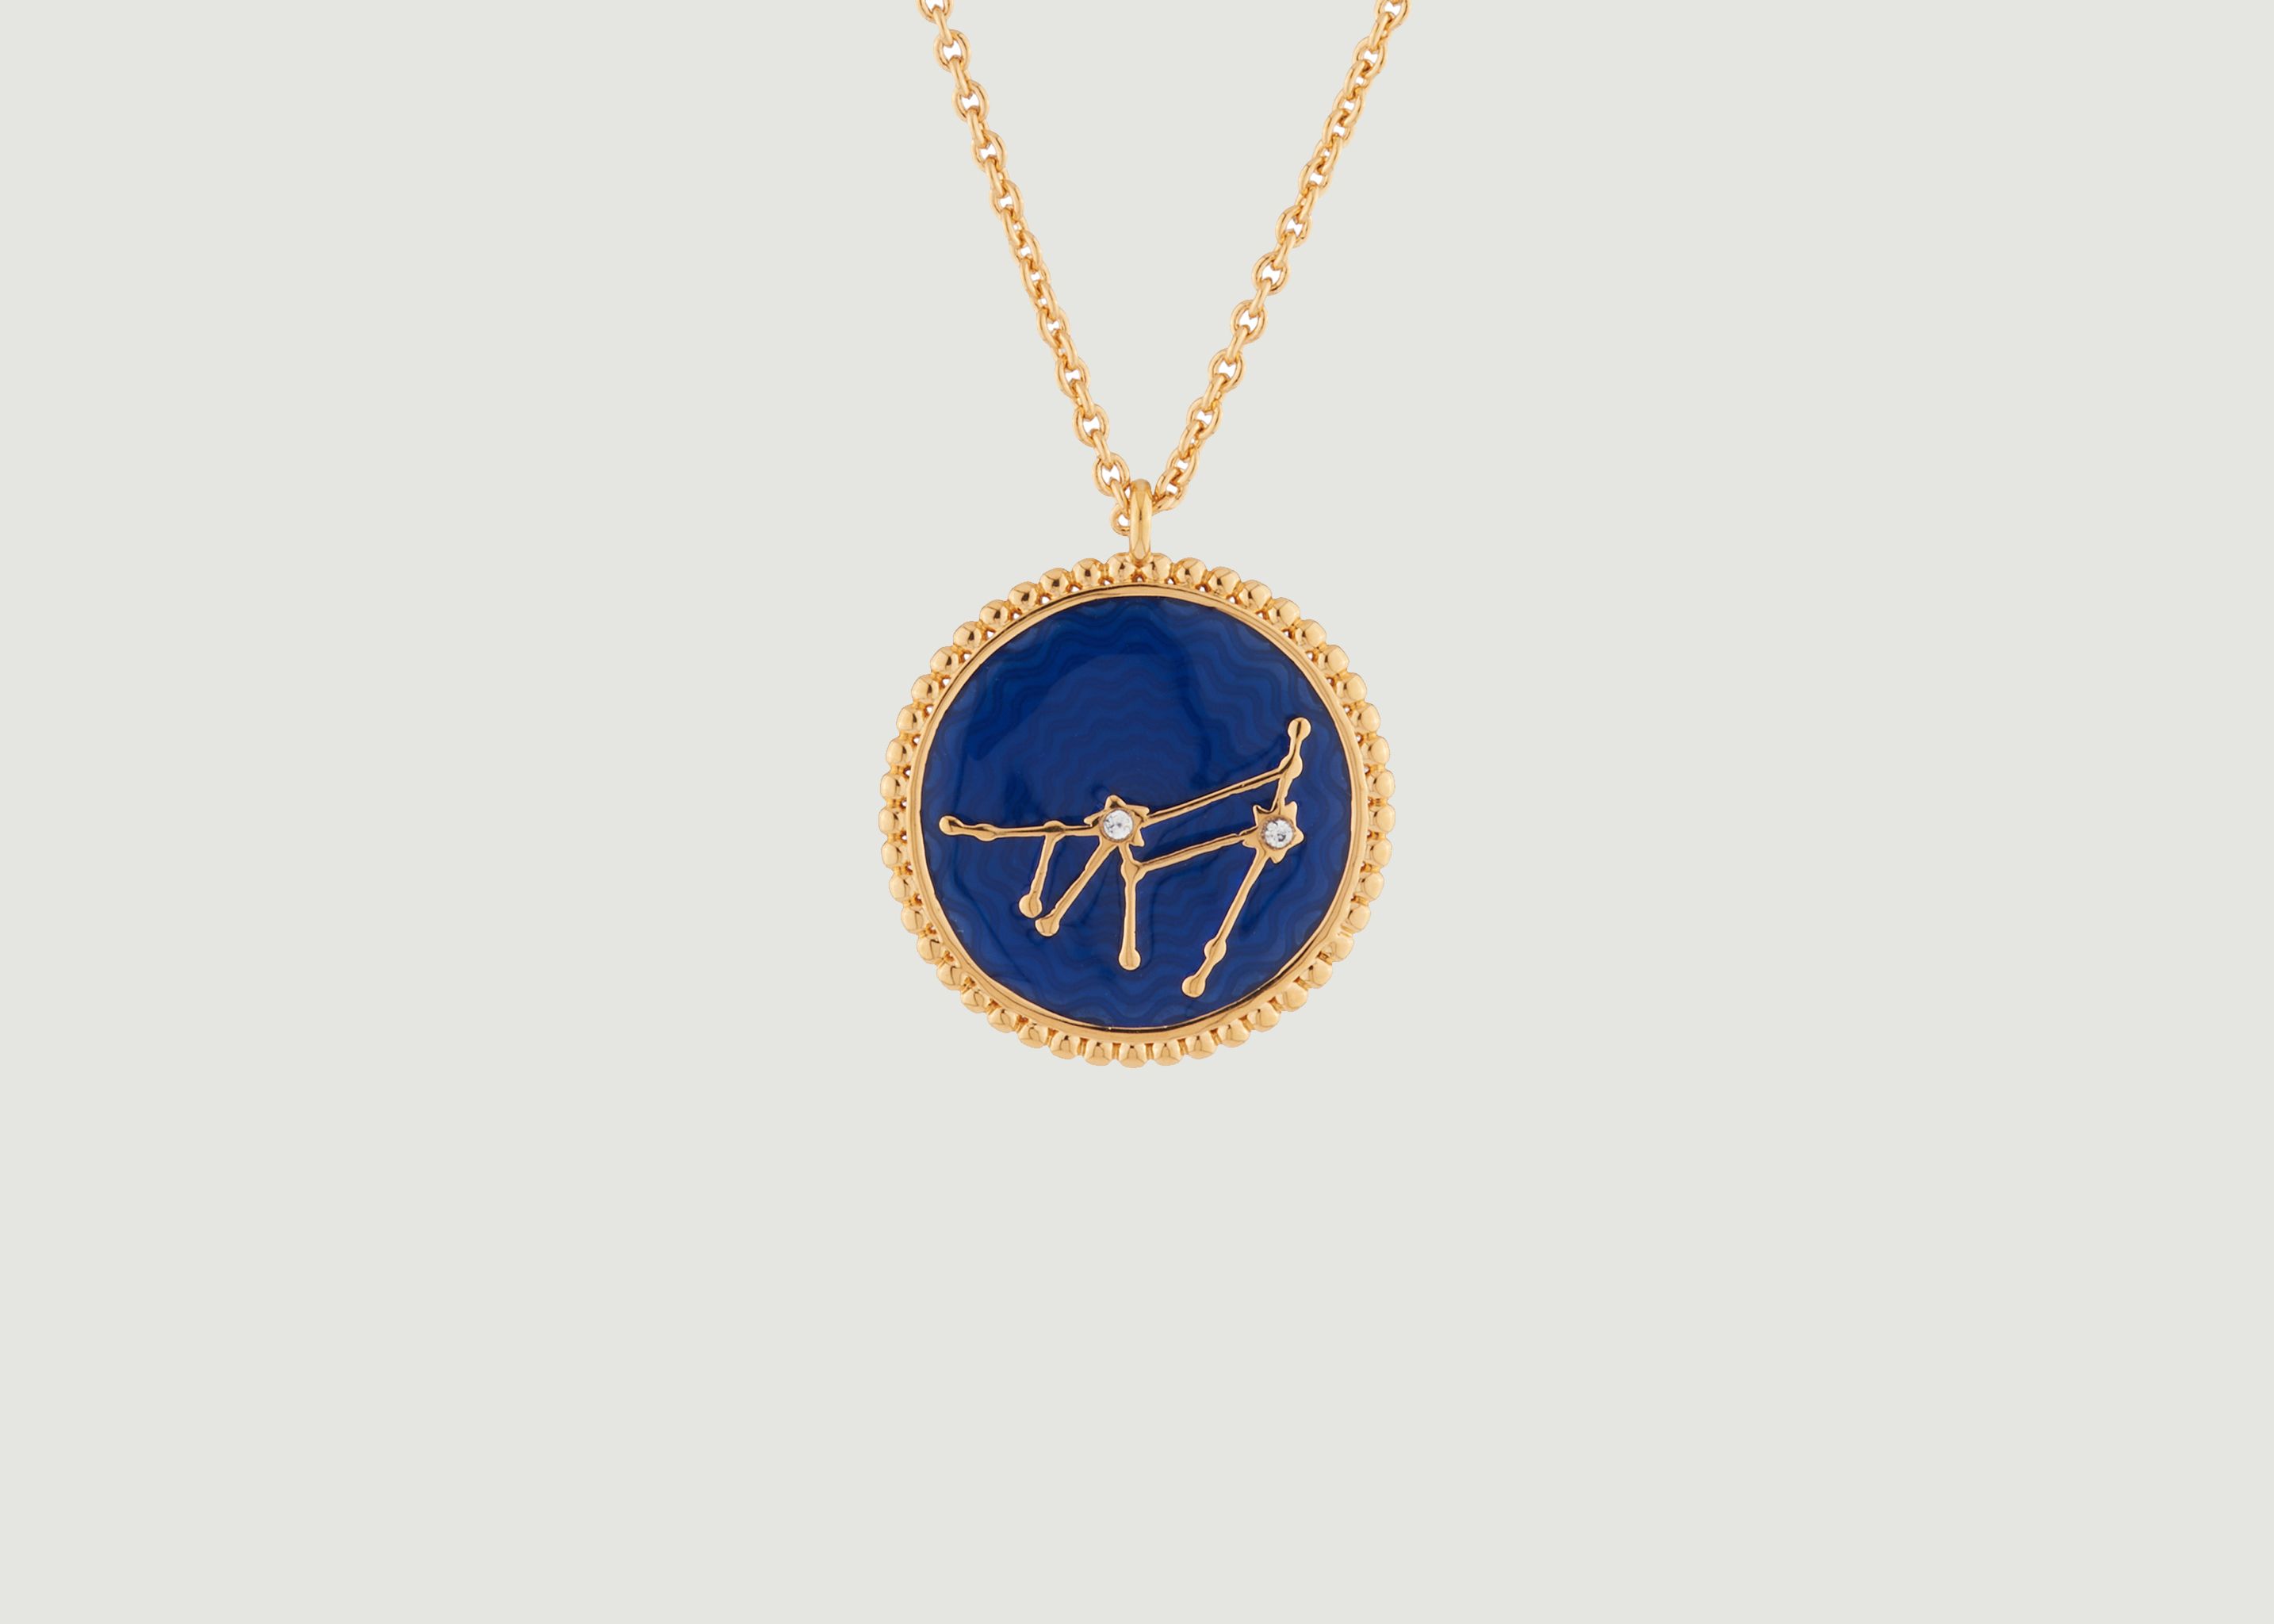 Collier avec pendentif signe astrologique Capricorne - Les Néréides